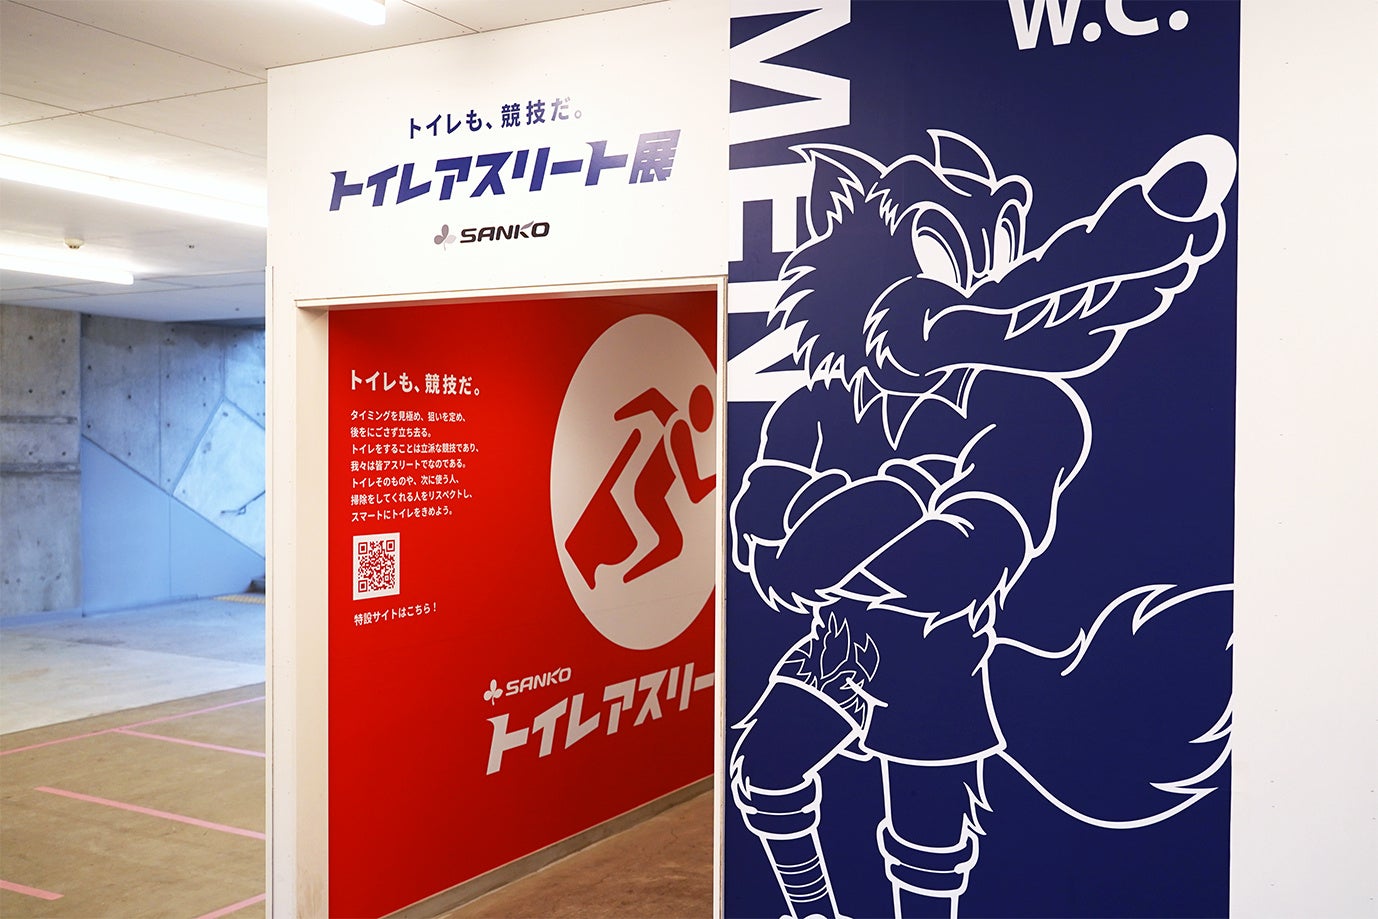 【auスマートパスプレミアム会員限定】京都サンガF.C.のホームゲームで使える「スマプレサンガ割」提供開始!！